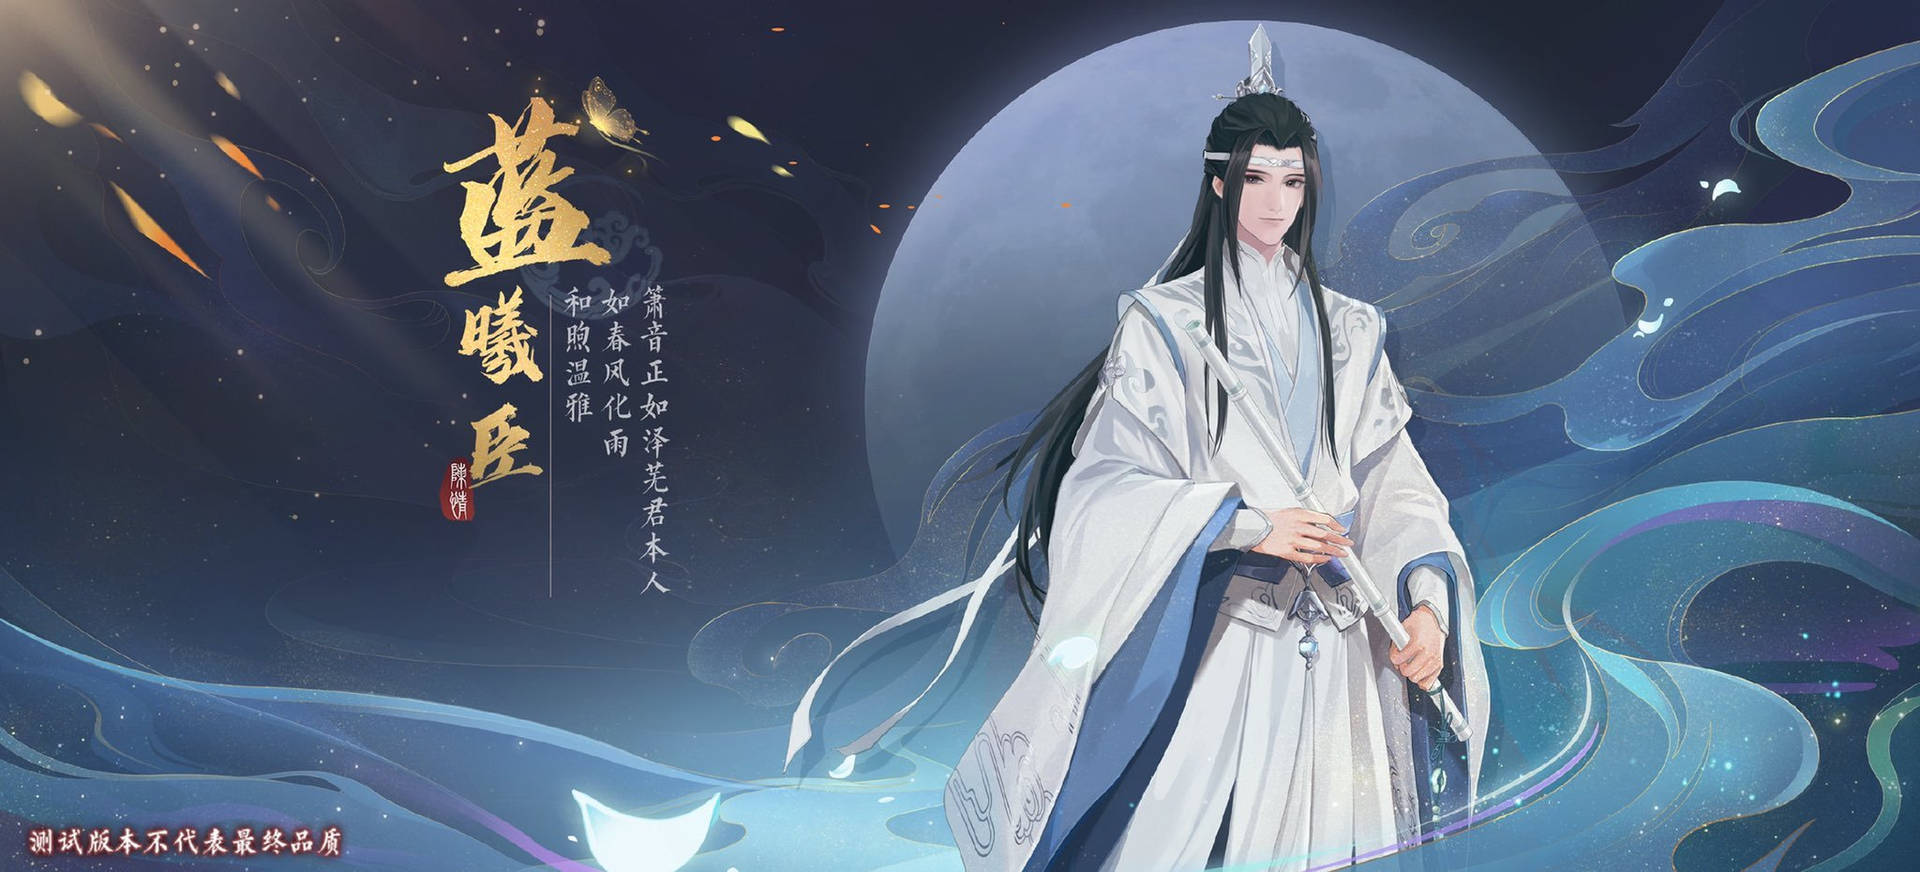 Mo Dao Zu Shi Lan Xichen Game Poster Background